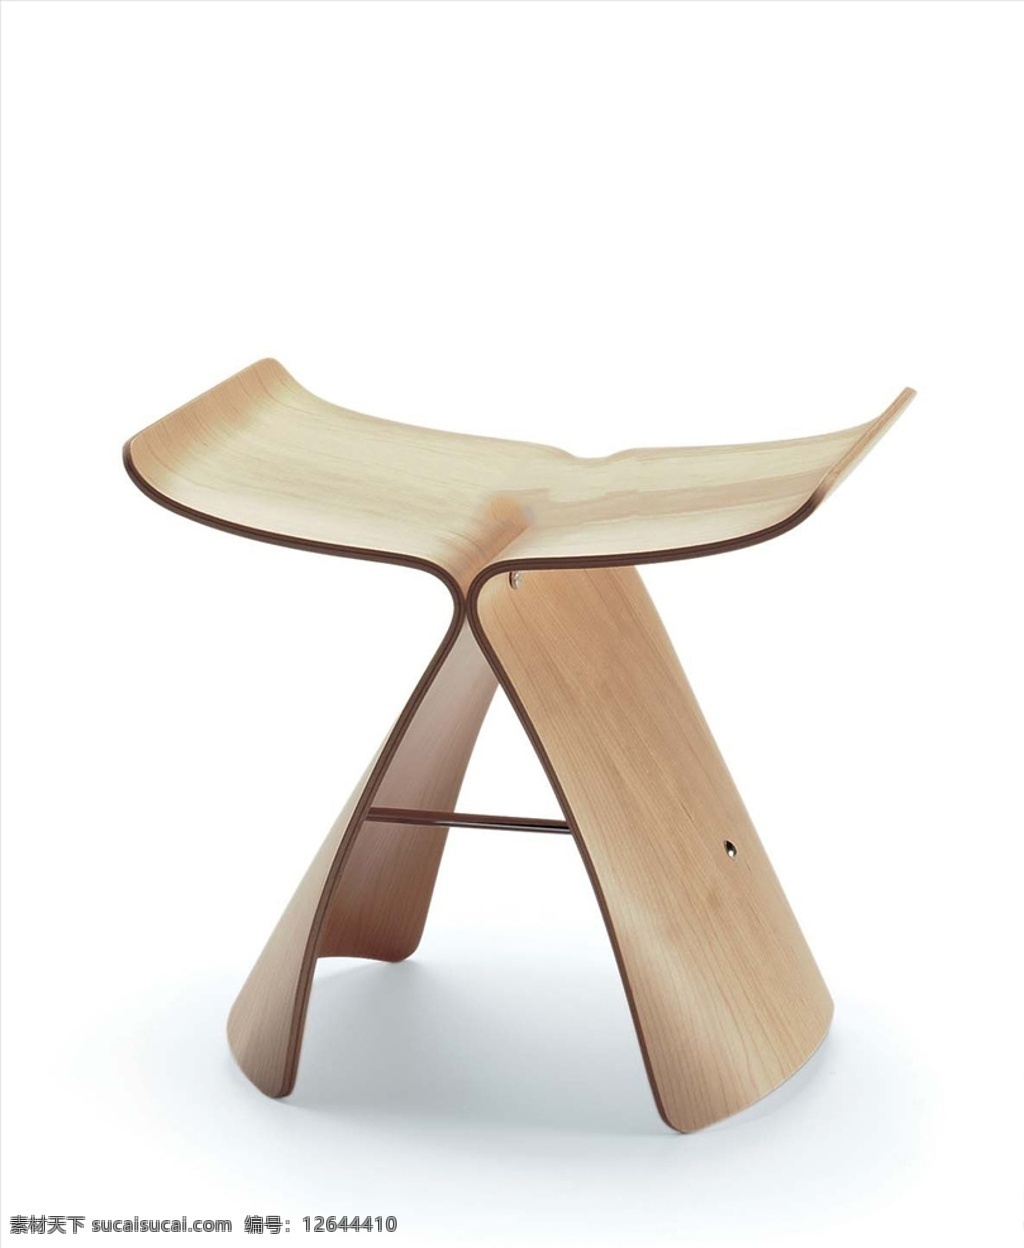 现代椅子 椅子模型 家具模型 室内家具 座椅模型 凳子 椅子 鱼尾凳 3d设计 室内模型 max